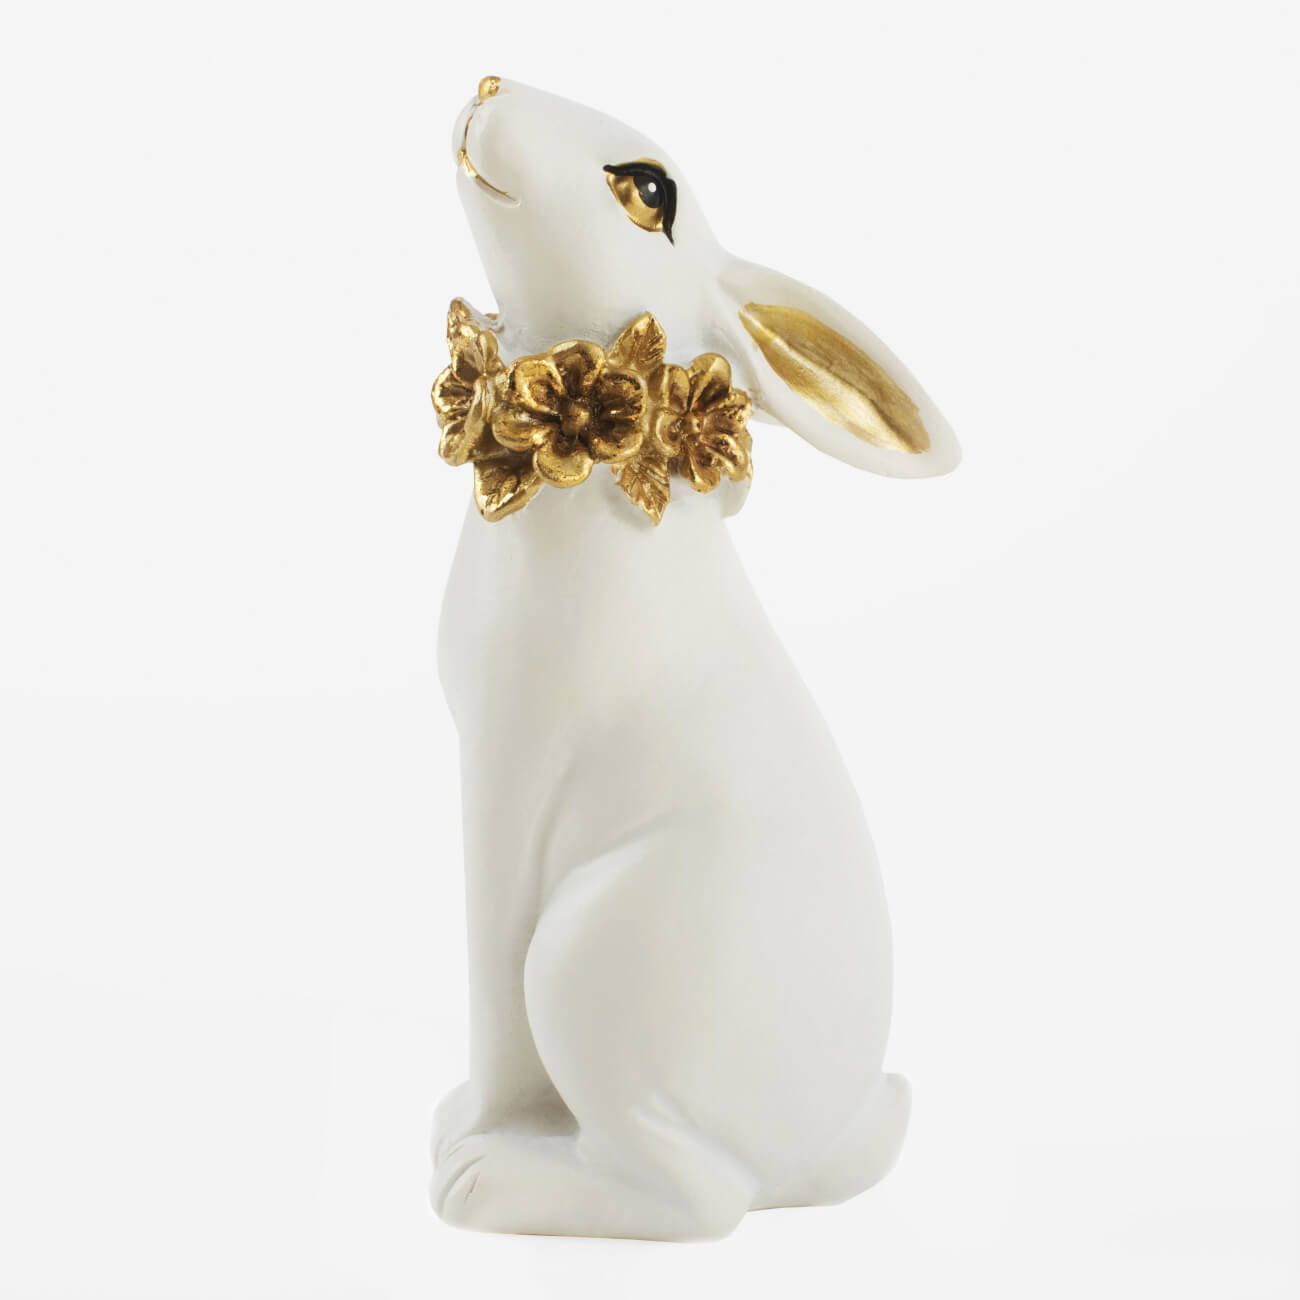 Статуэтка, 13 см, полирезин, бело-золотистая, Кролик с цветочным ожерельем, Easter gold статуэтка слон